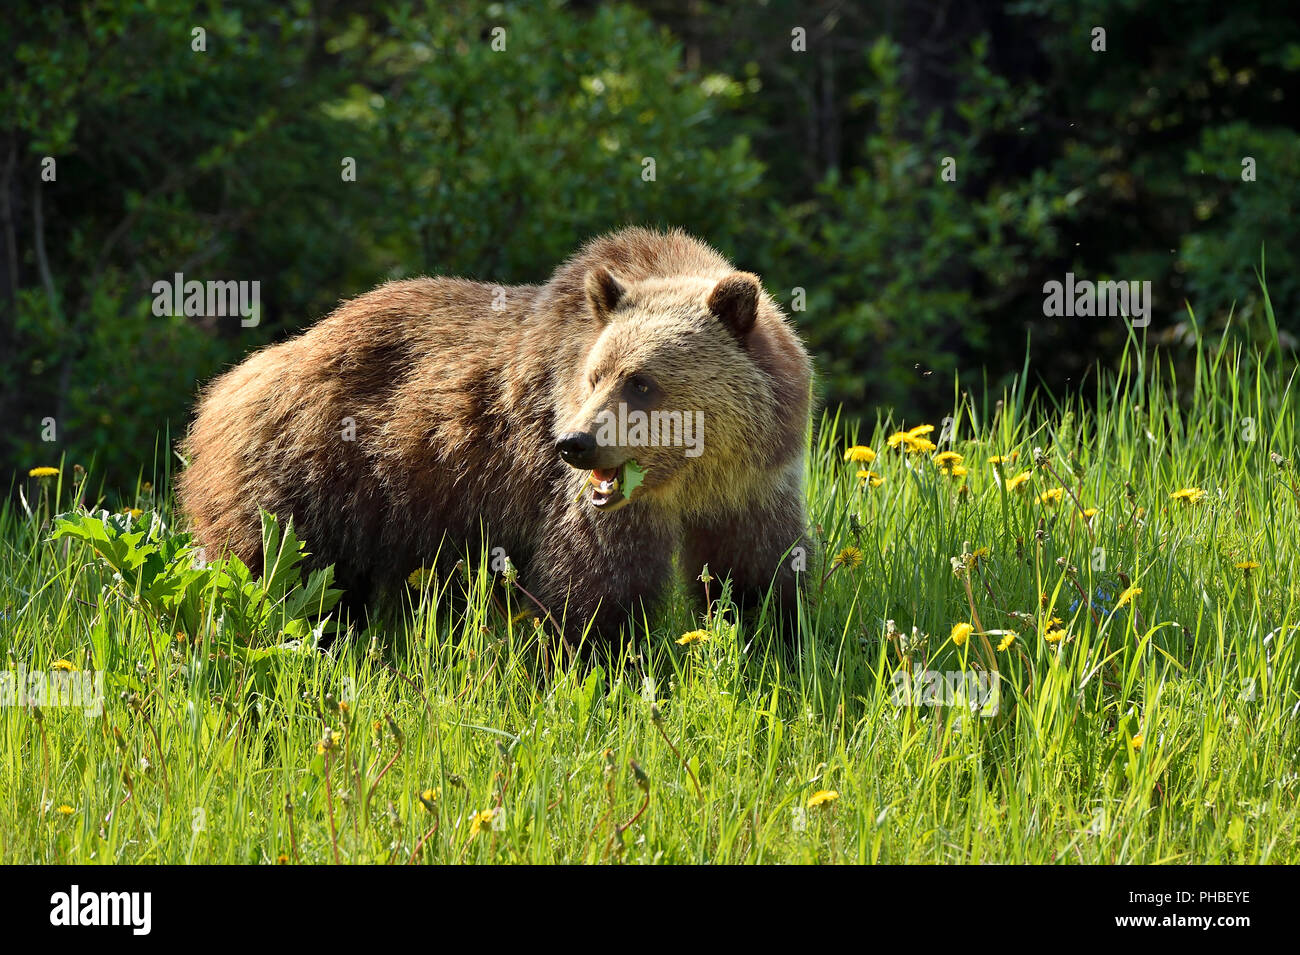 Un orso grizzly (Ursus arctos); guardando indietro mentre si alimenta sul verde foglie dandilyon nelle zone rurali di Alberta in Canada. Foto Stock